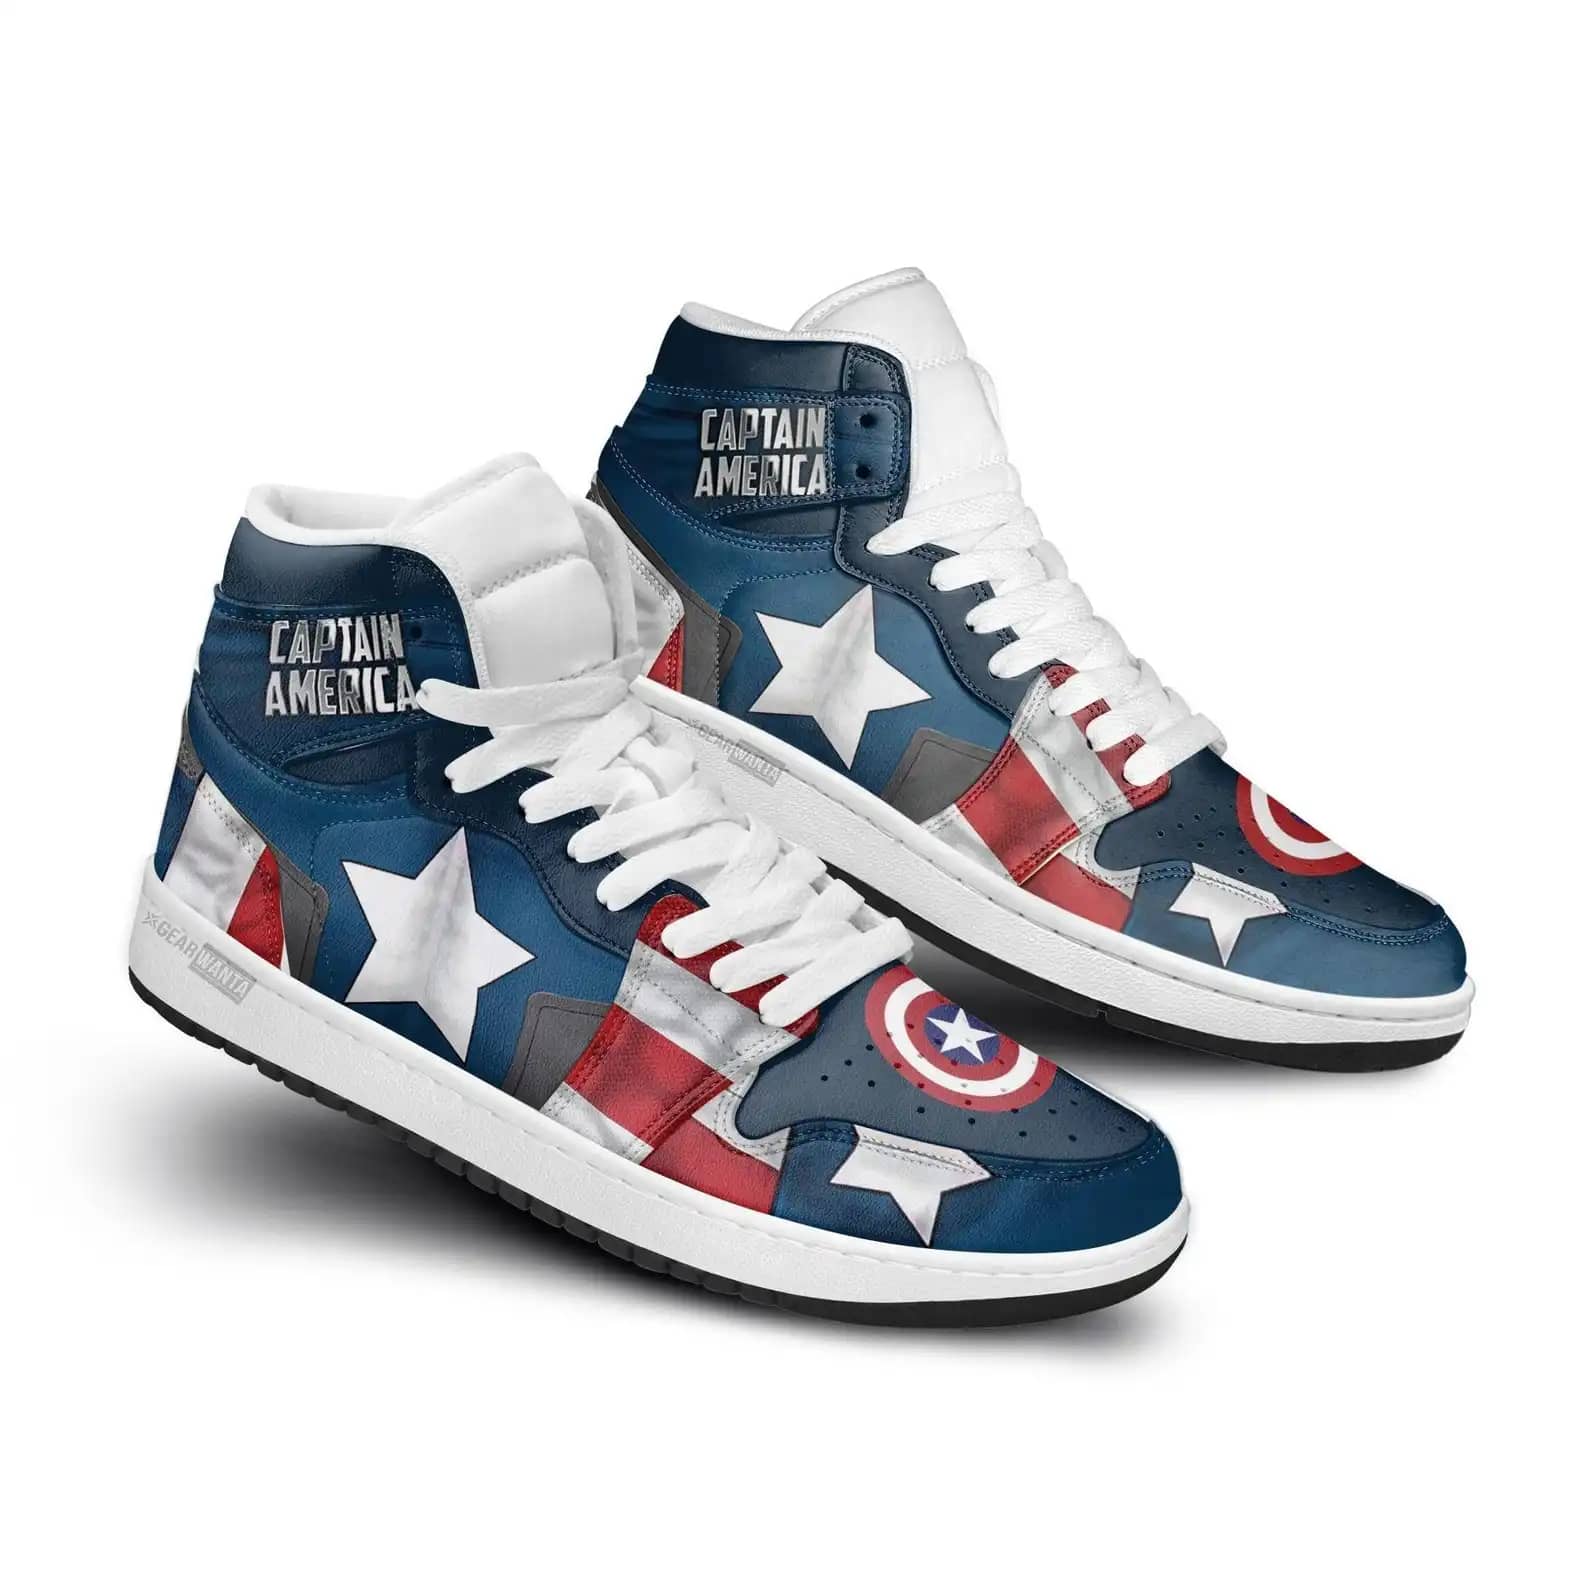 Avenger Captain America Super Heroes For Movie Fans Custom Sneaker For Men And Women Air Jordan Shoes